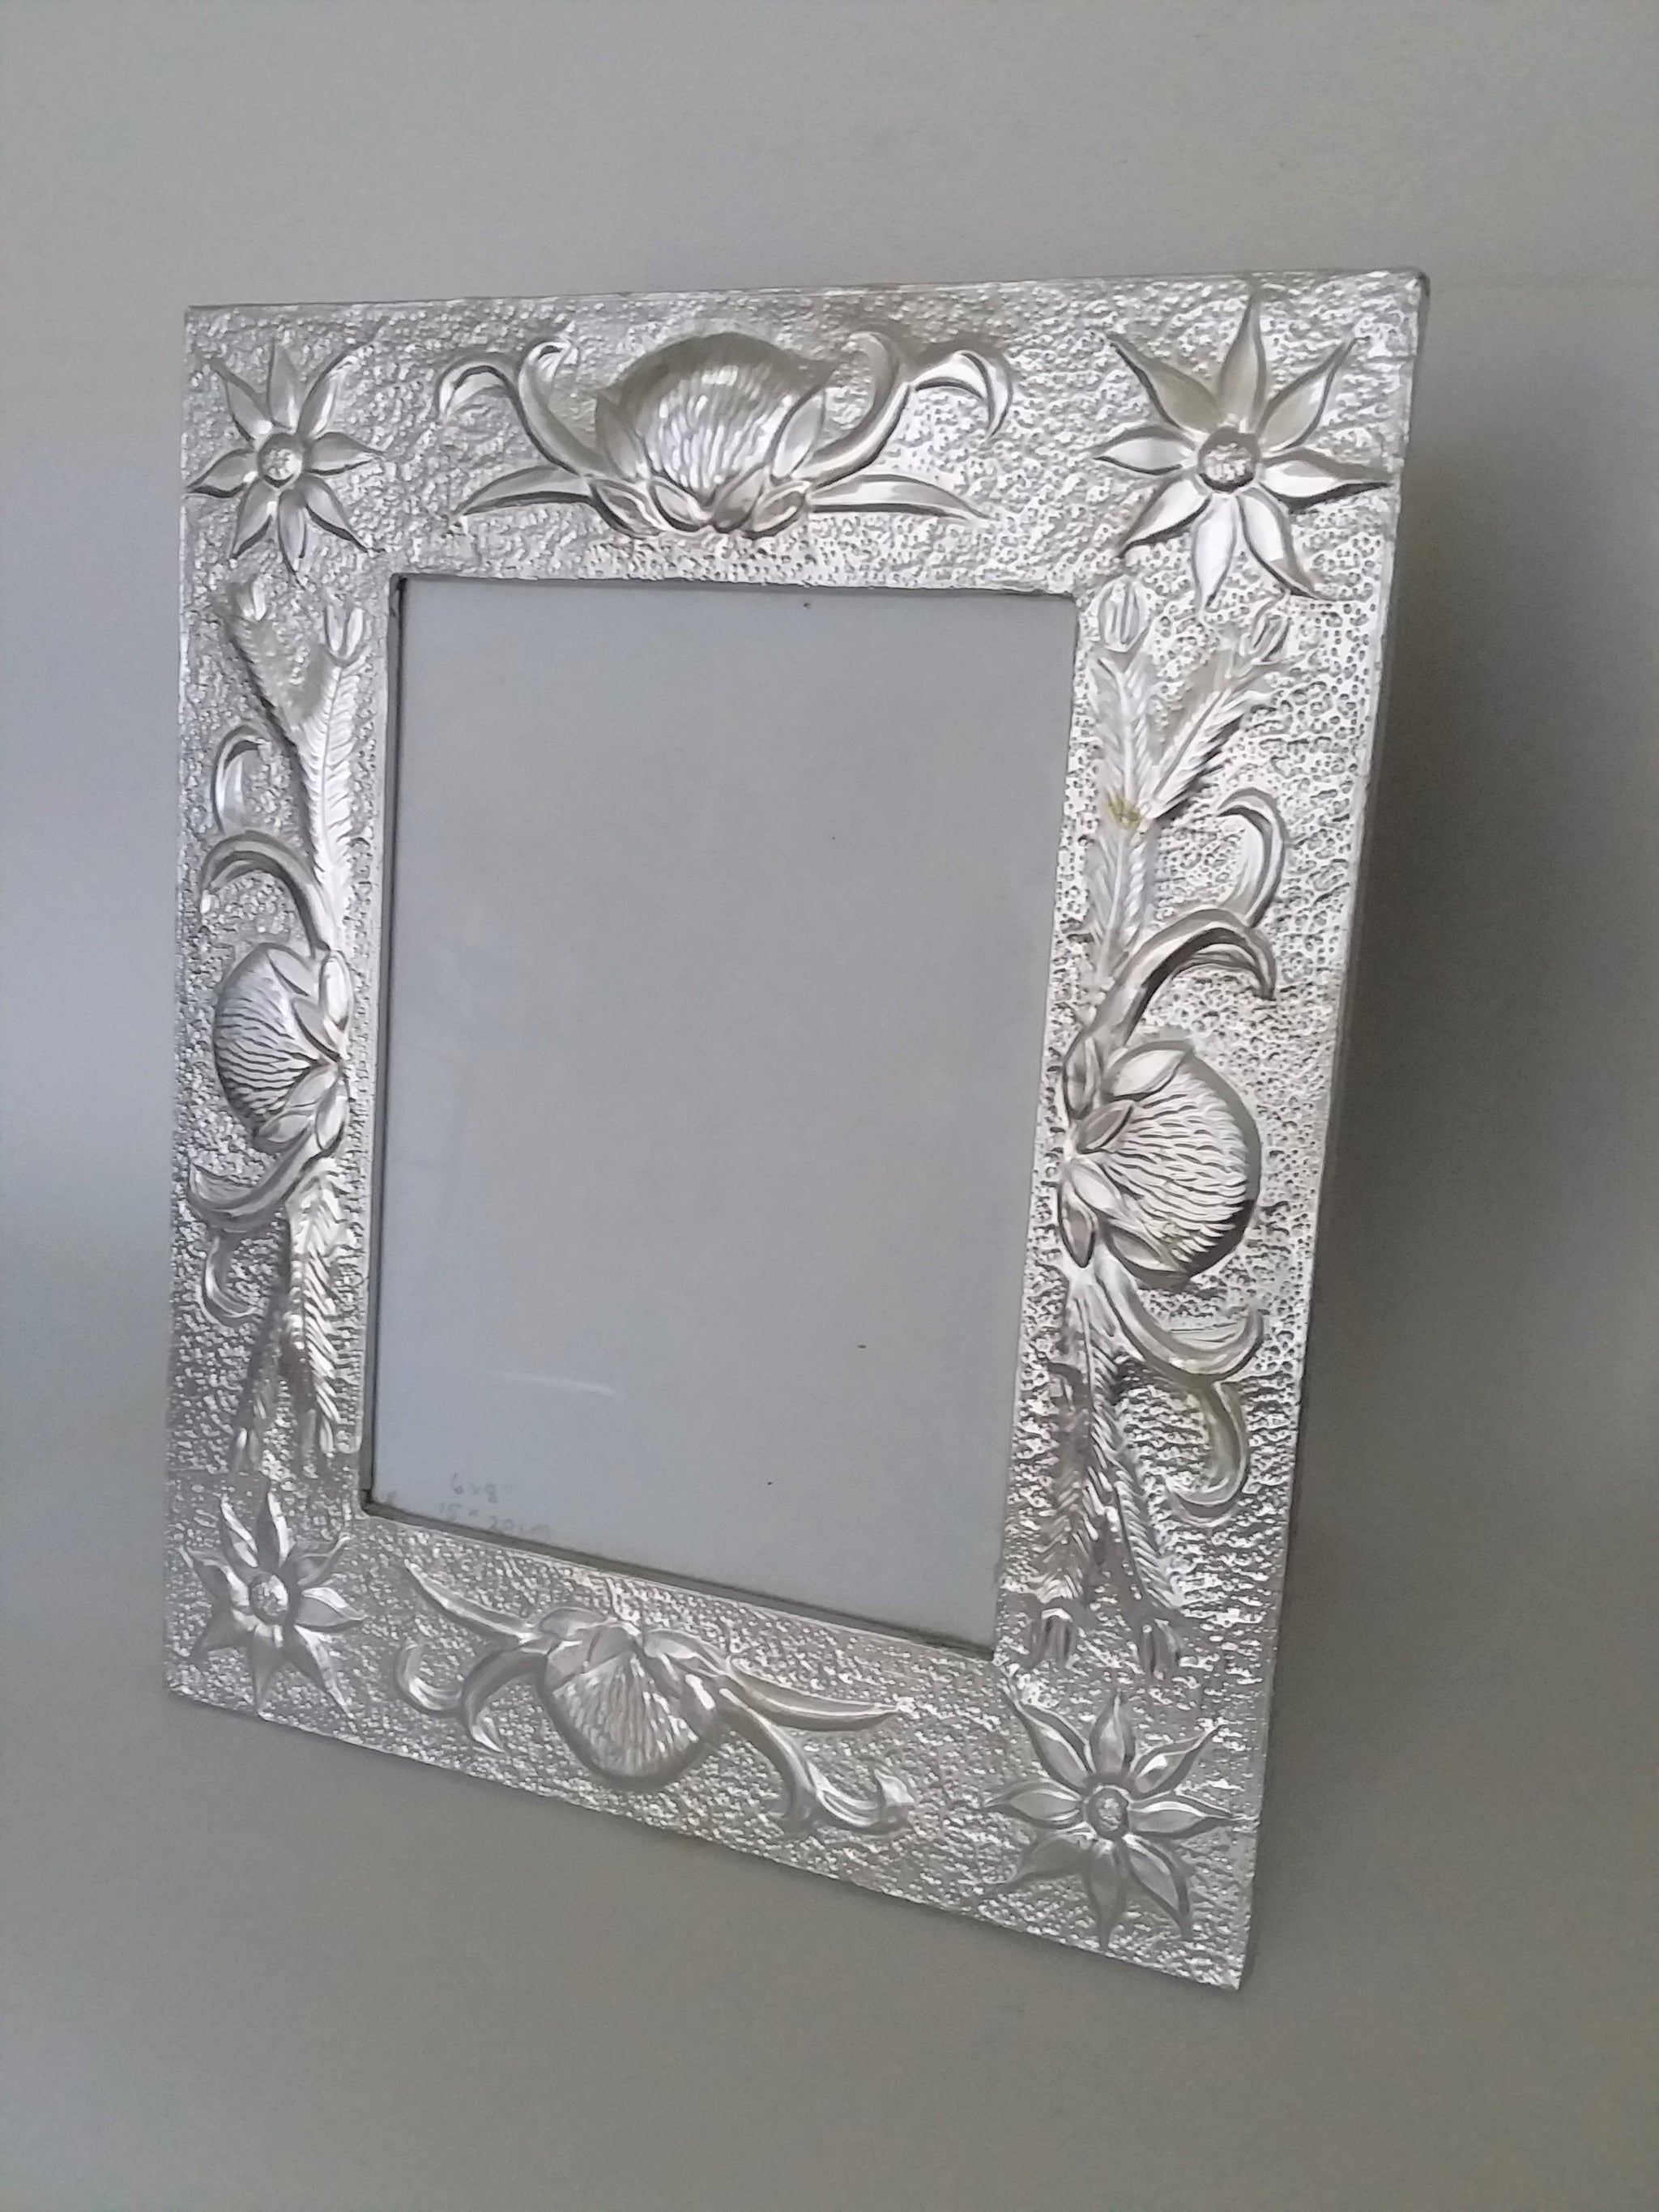 Silver foil photo frame by Gwen Gibb